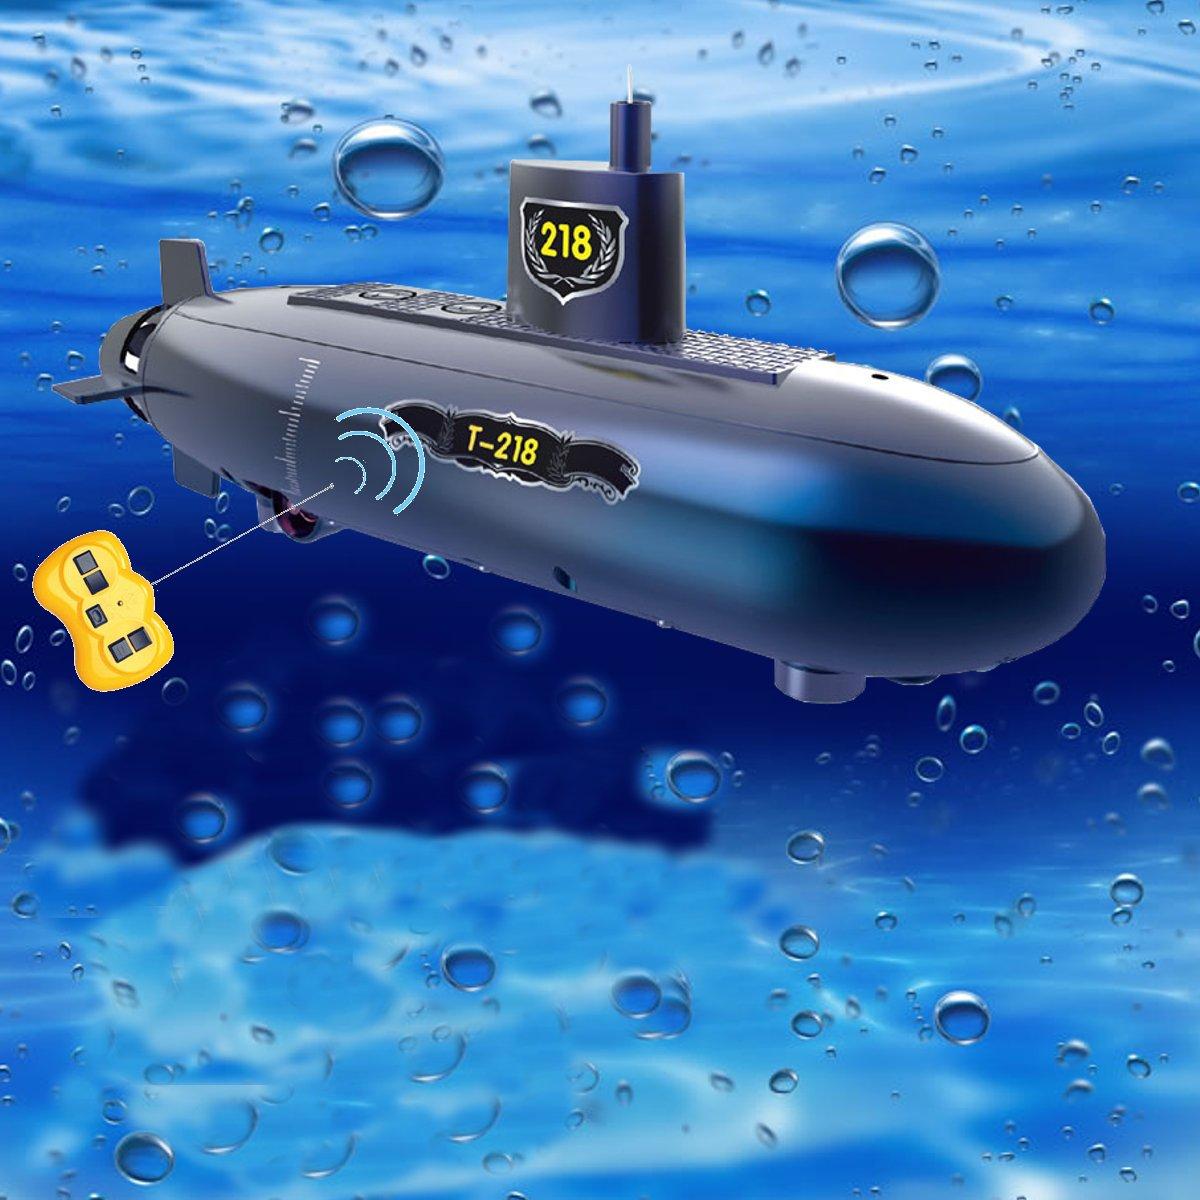 rc submarine price